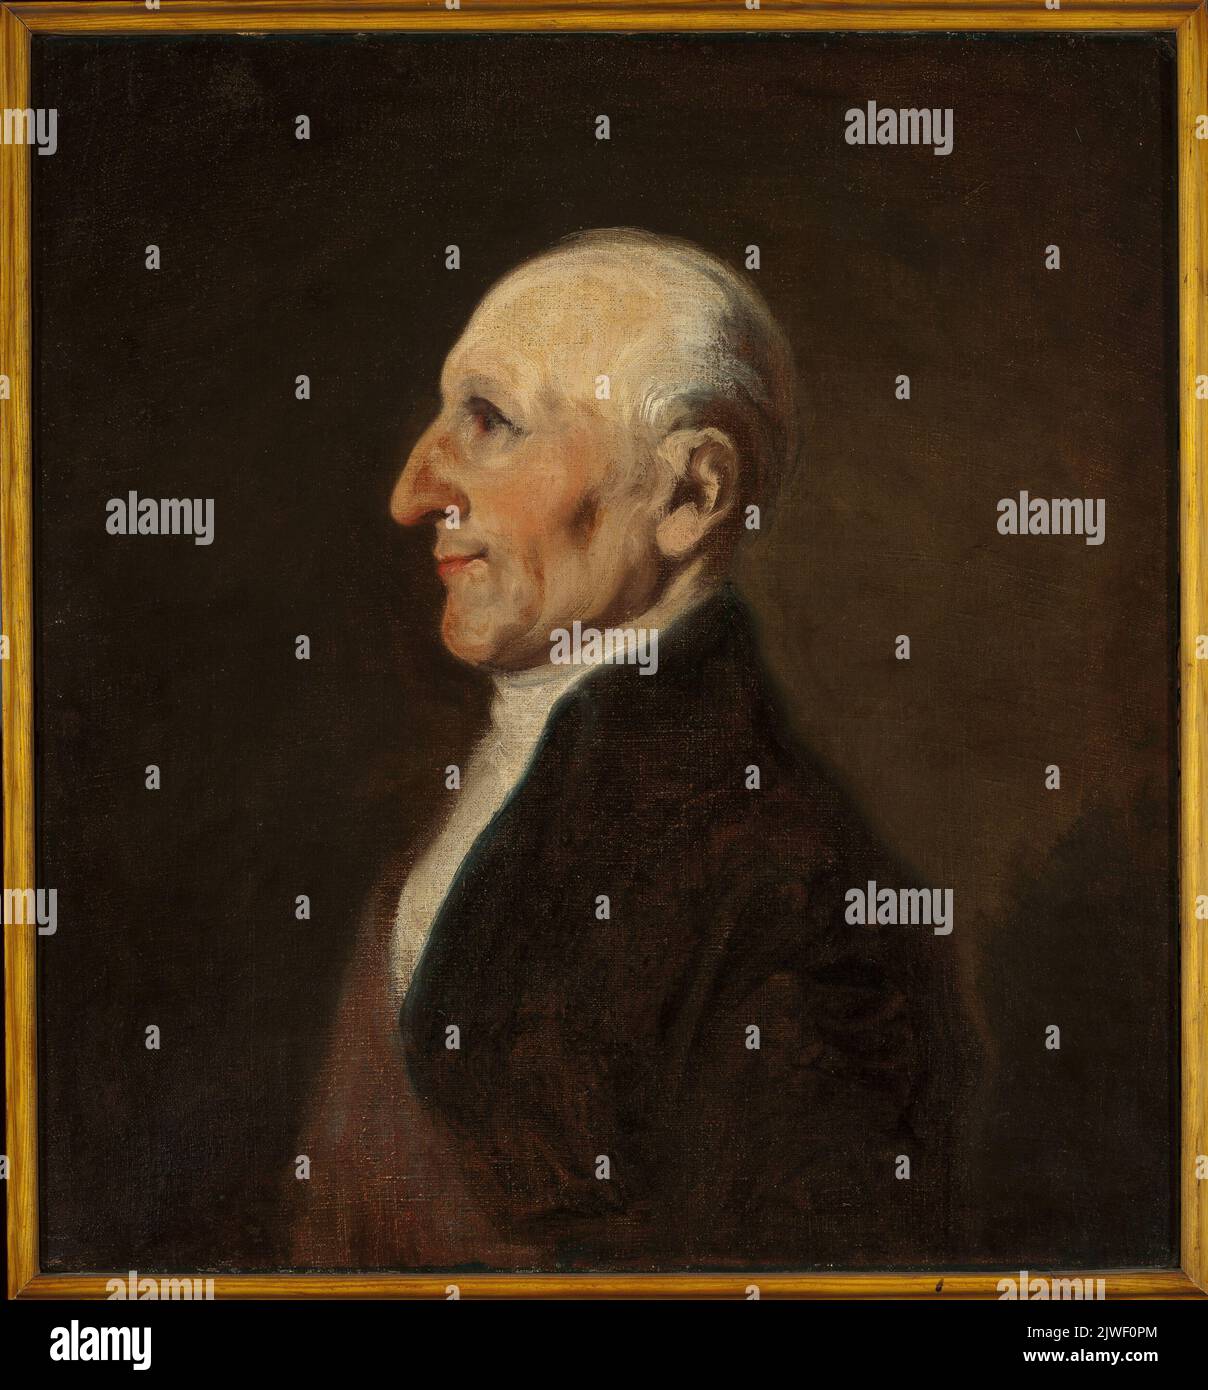 Ritratto del padre dell'artista. Michałowski, Piotr (1800-1855), pittore Foto Stock